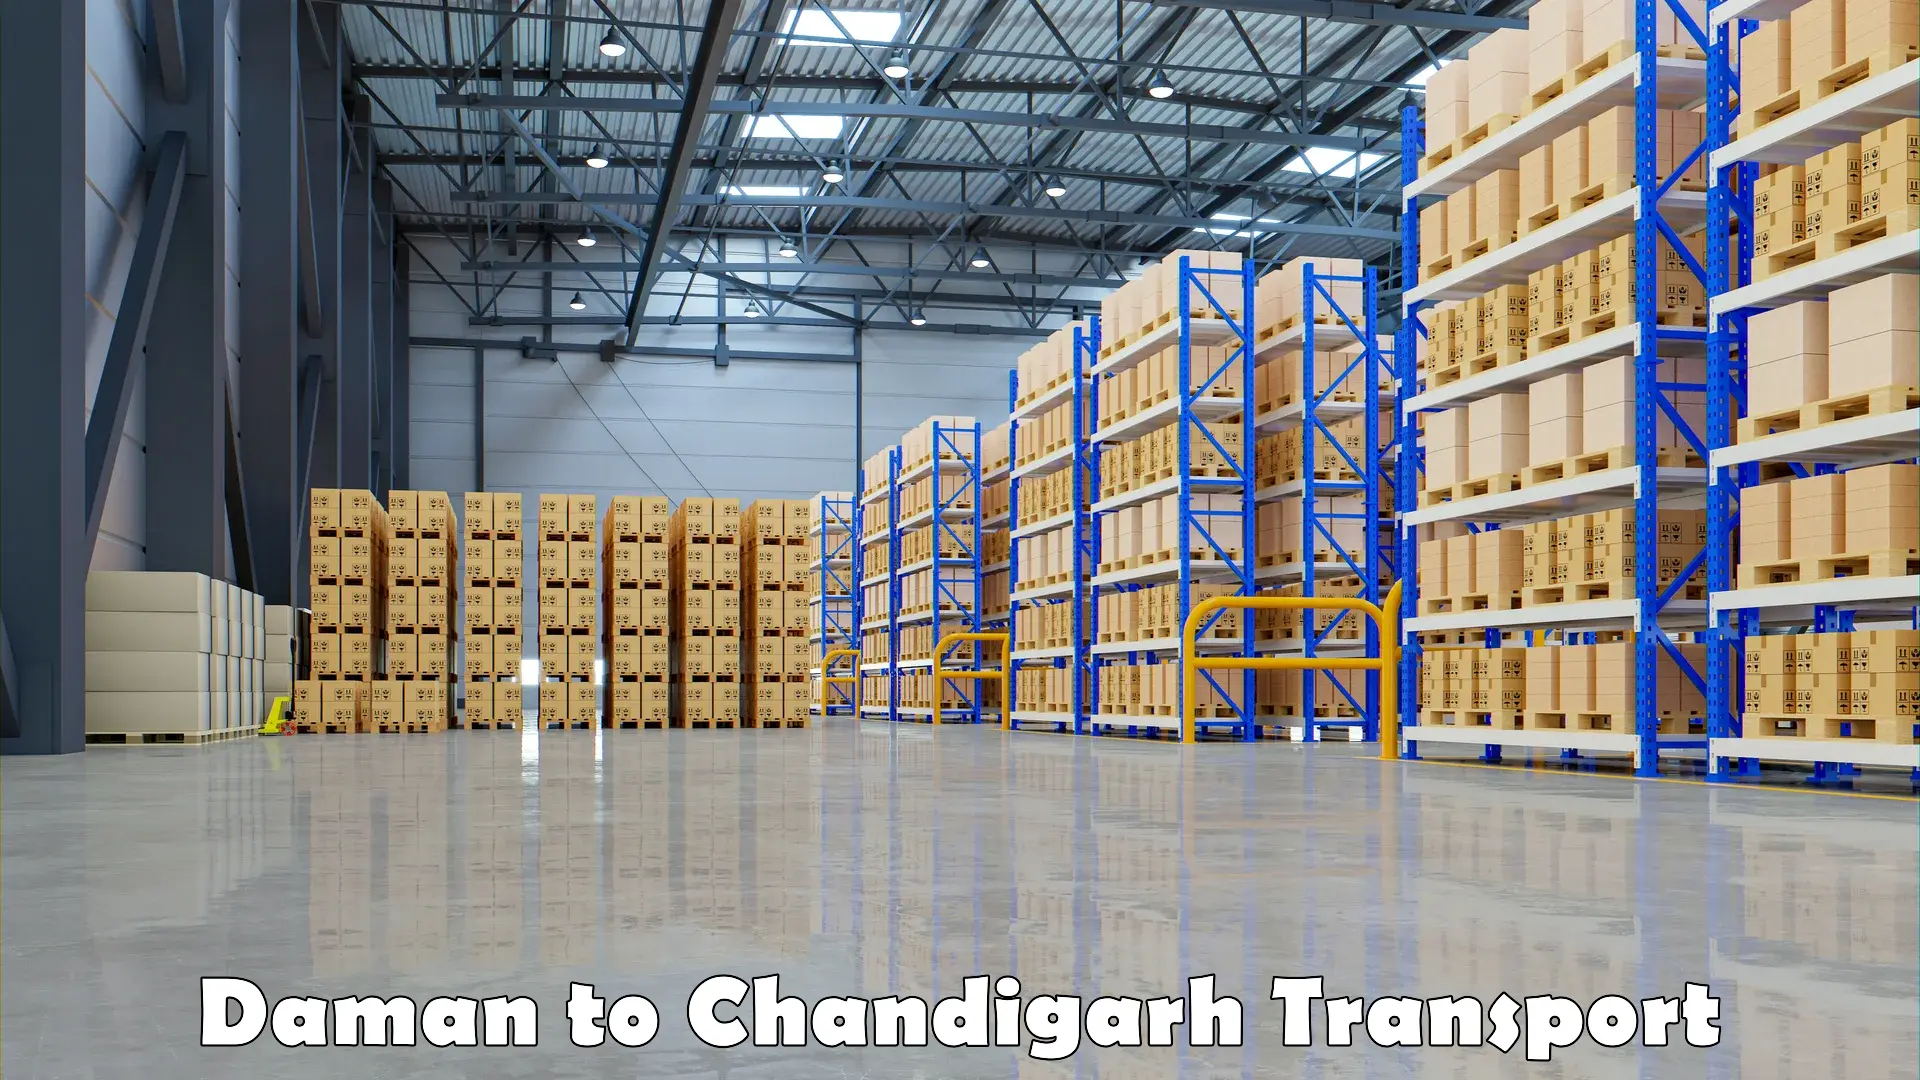 Online transport service Daman to Chandigarh